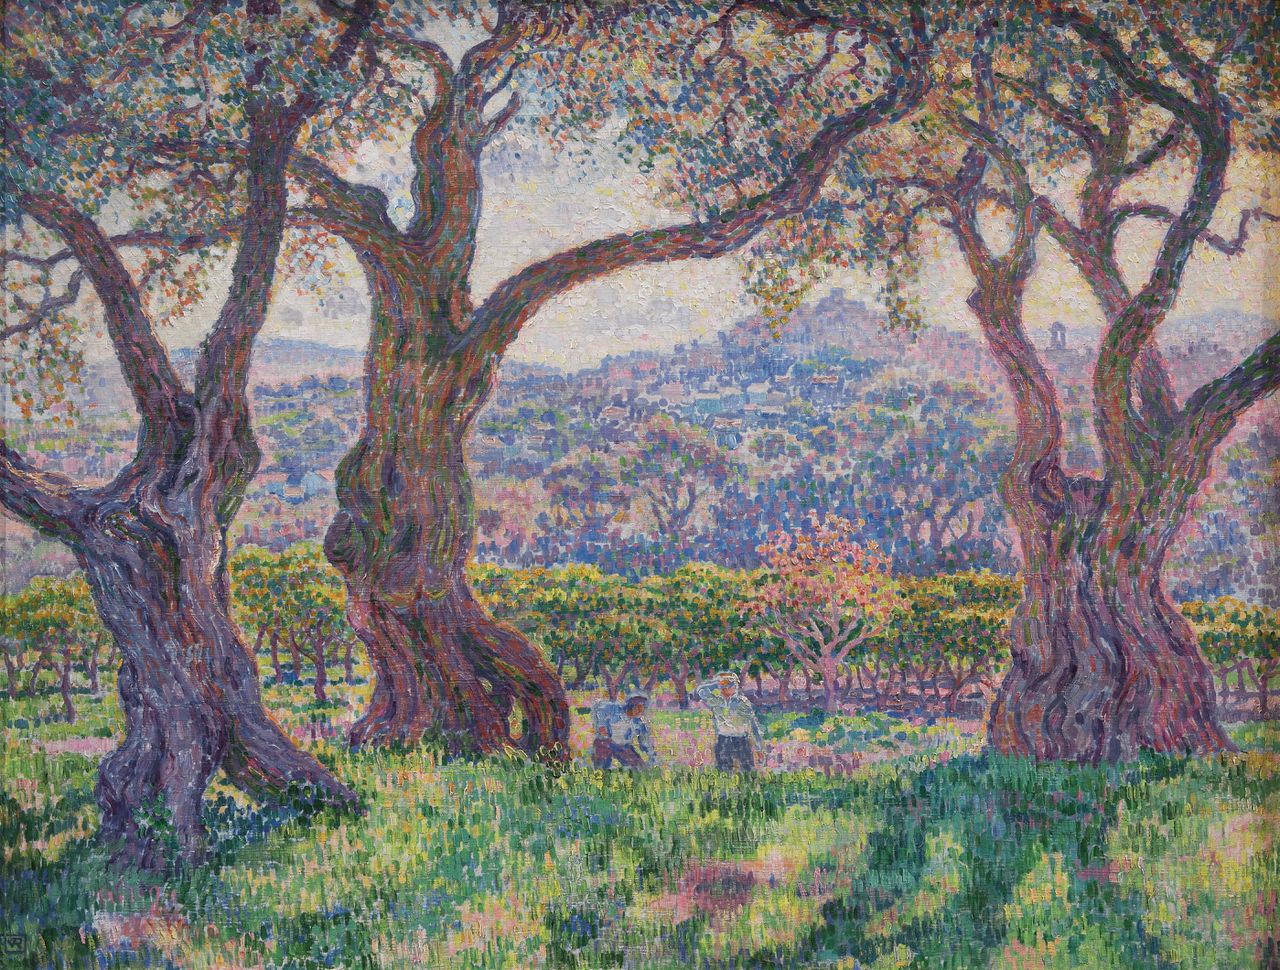 Théo van Rysselberghe, Olijfbomen in Cagnes, 1906. Olieverf op doek, 90 x 117 cm. Particuliere collectie.